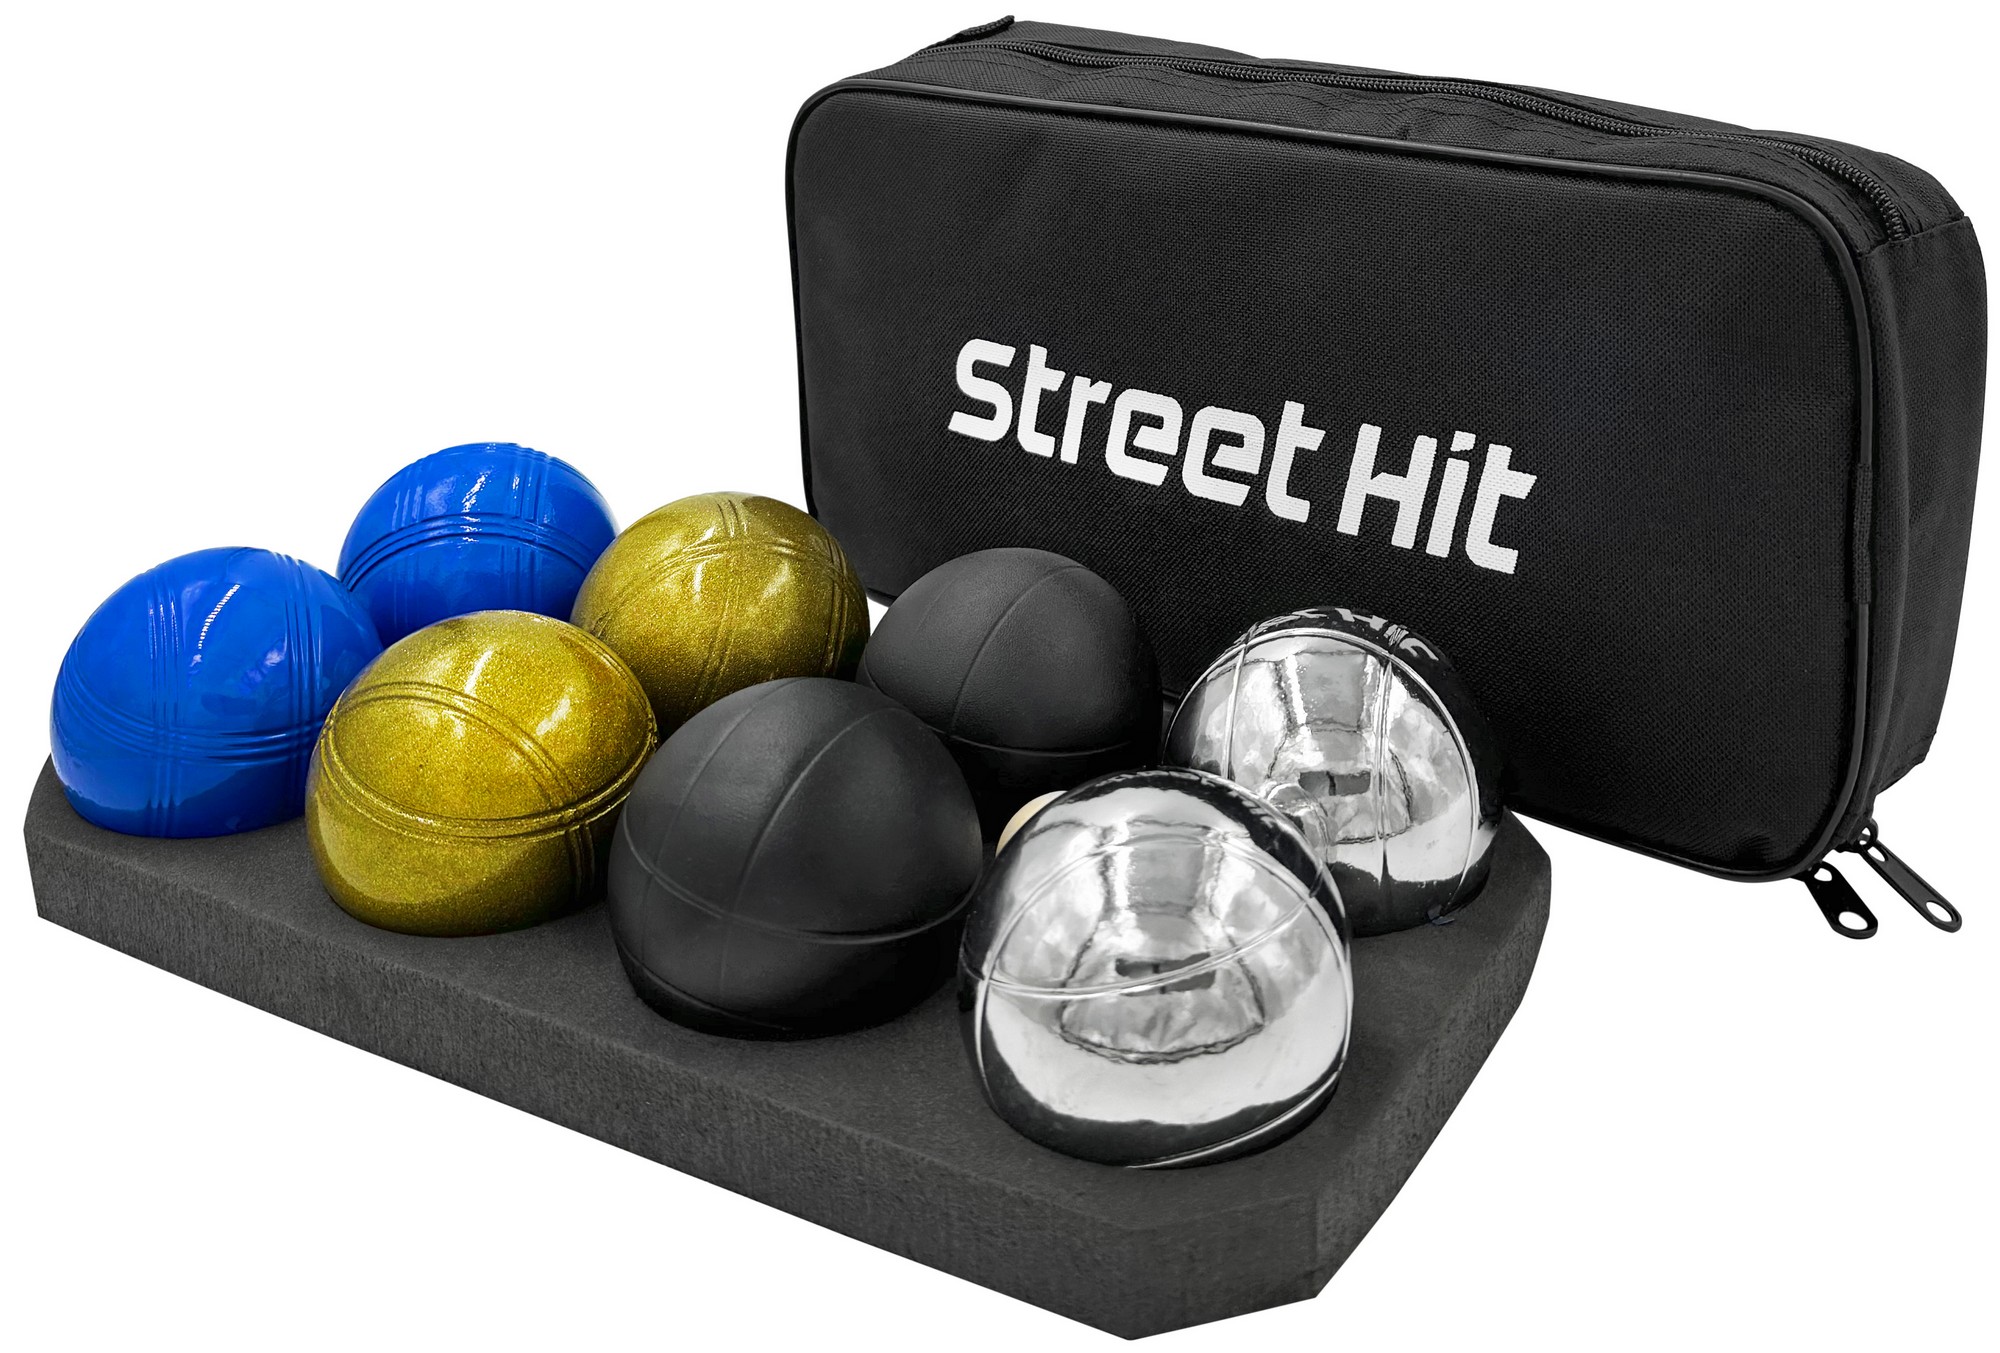 Набор для игры Street Hit Петанк, 8 шаров из металла, стальной+золотой+черный+синий